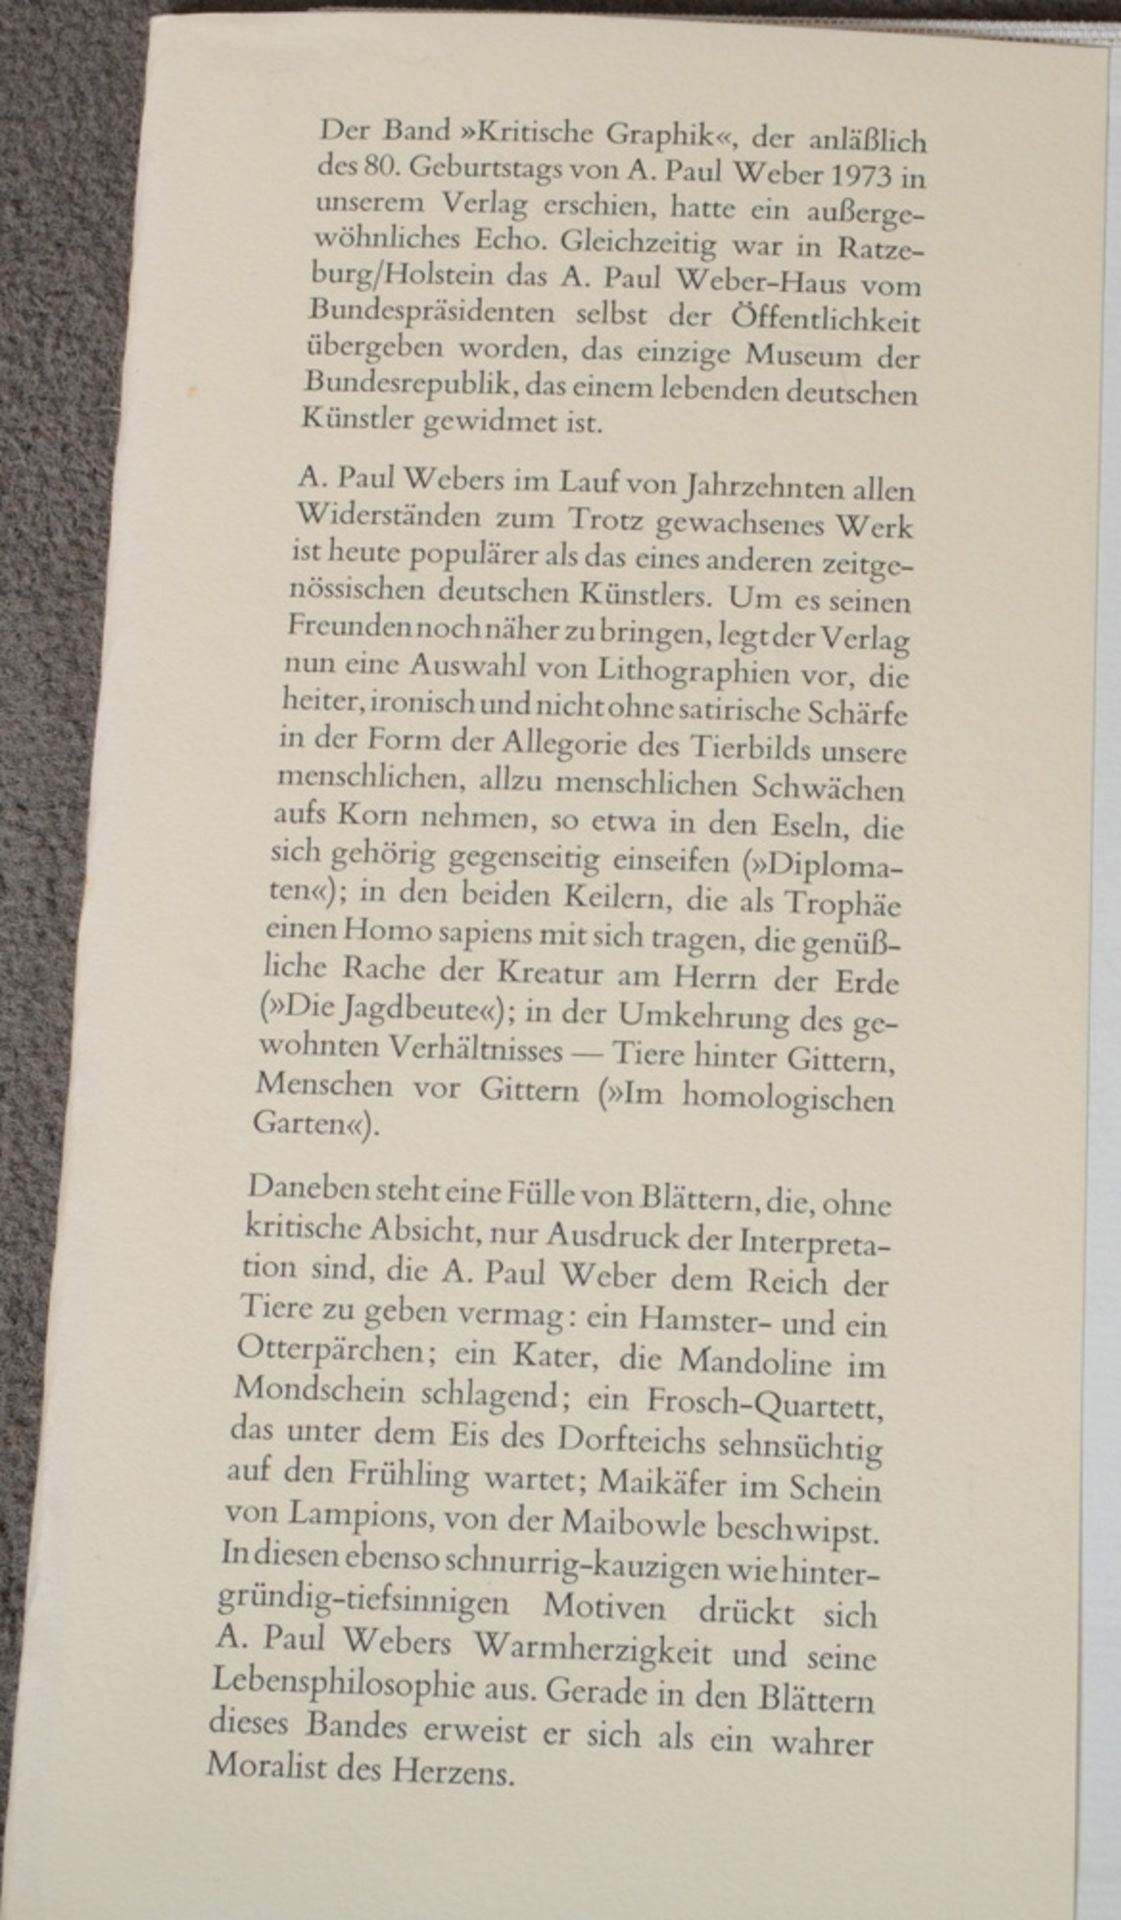 A. Paul Weber „Tierbilderbuch“, mit 52 Abbildungen nach Lithographien, Hoffmann und Campe, Hamburg - Image 6 of 6